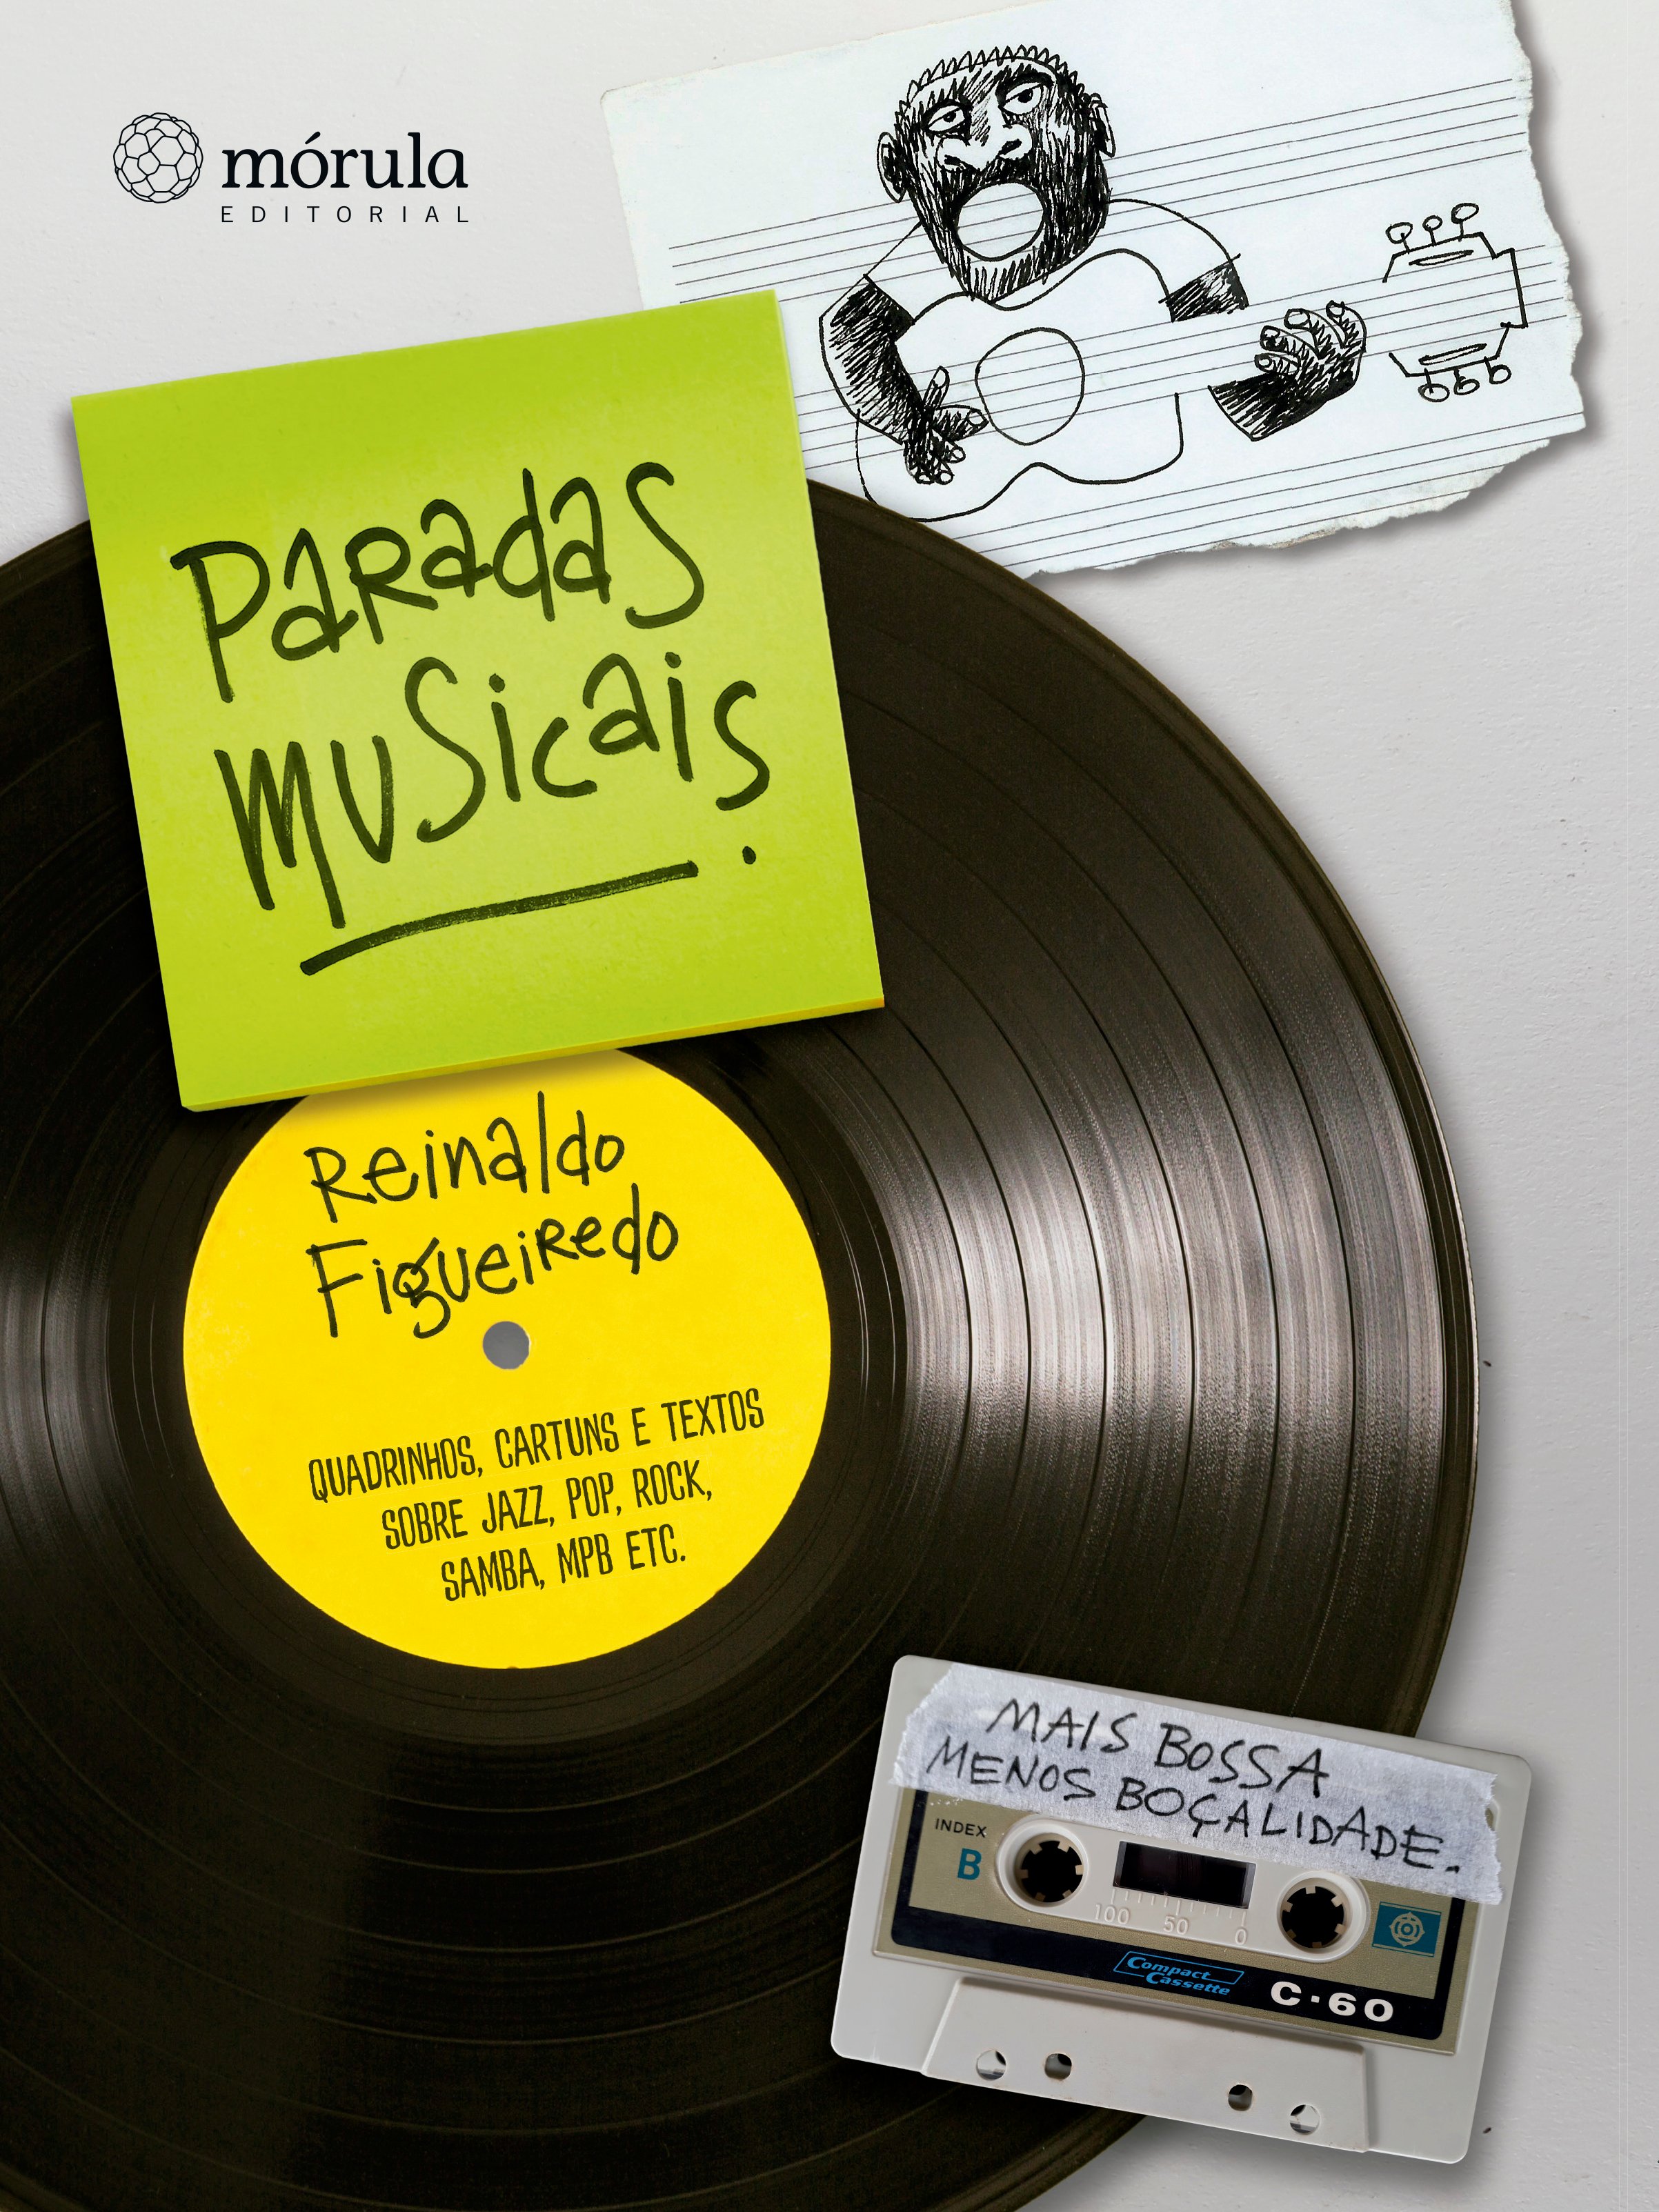 Paradas Musicais - Quadrinhos, Cartuns e Textos Sobre Jazz, Pop, Rock, Samba, MPB Etc.